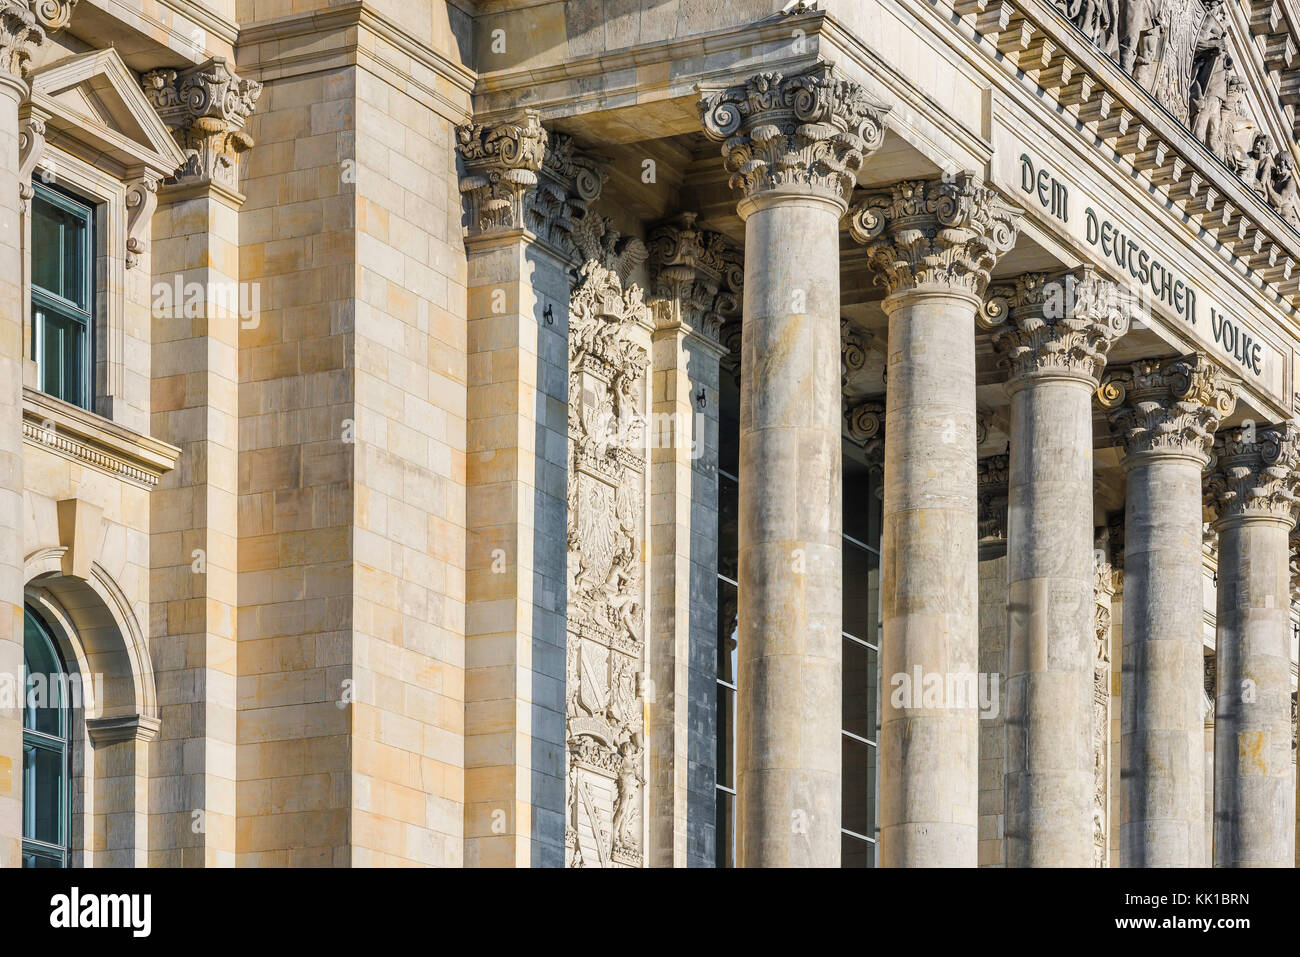 Bâtiment du Parlement de Berlin, vue sur les piliers et inscription sur le grand portique du bâtiment Reichstag à Berlin, Allemagne. Banque D'Images